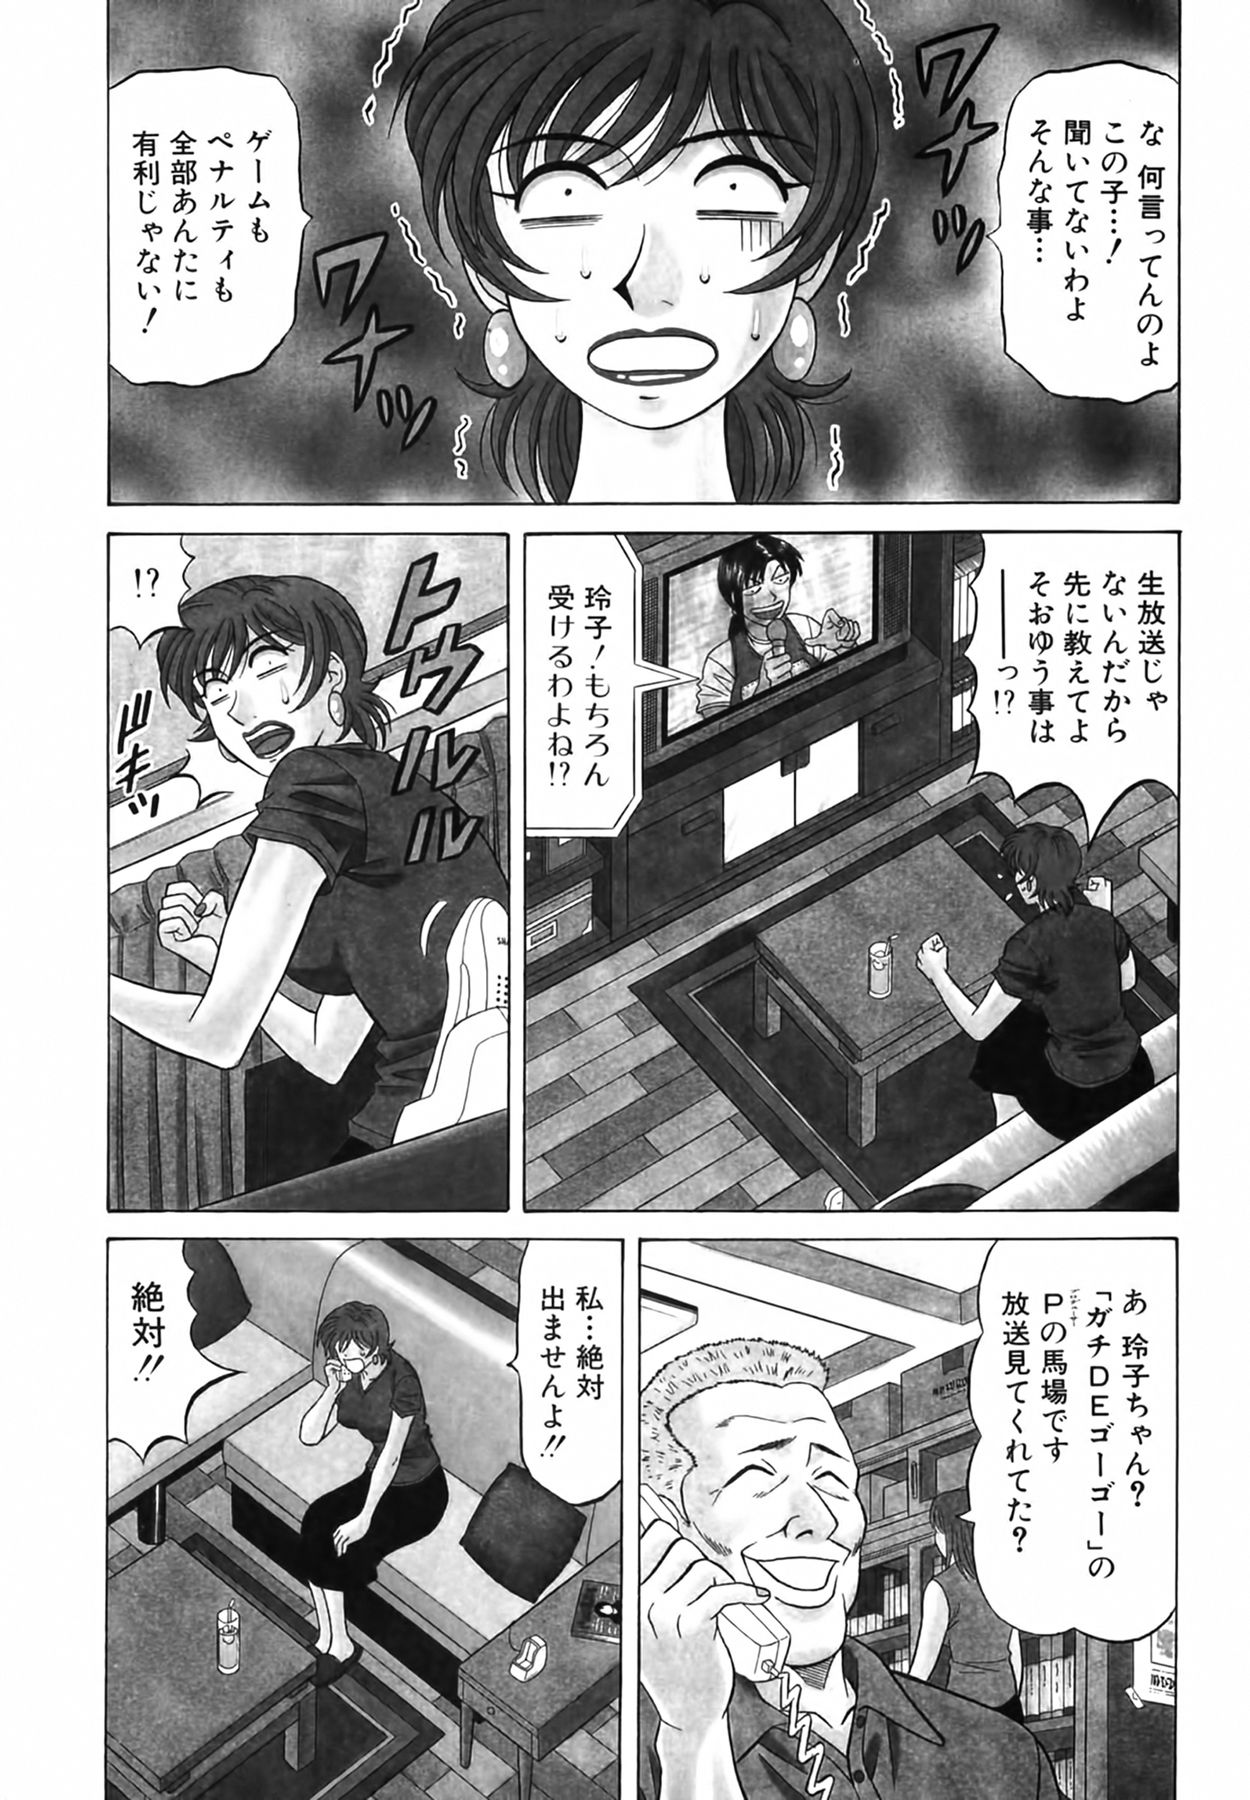 [Ozaki Akira] Caster Natsume Reiko no Yuuwaku Vol. 3 [尾崎晶] キャスター 夏目玲子の誘惑 Vol.3